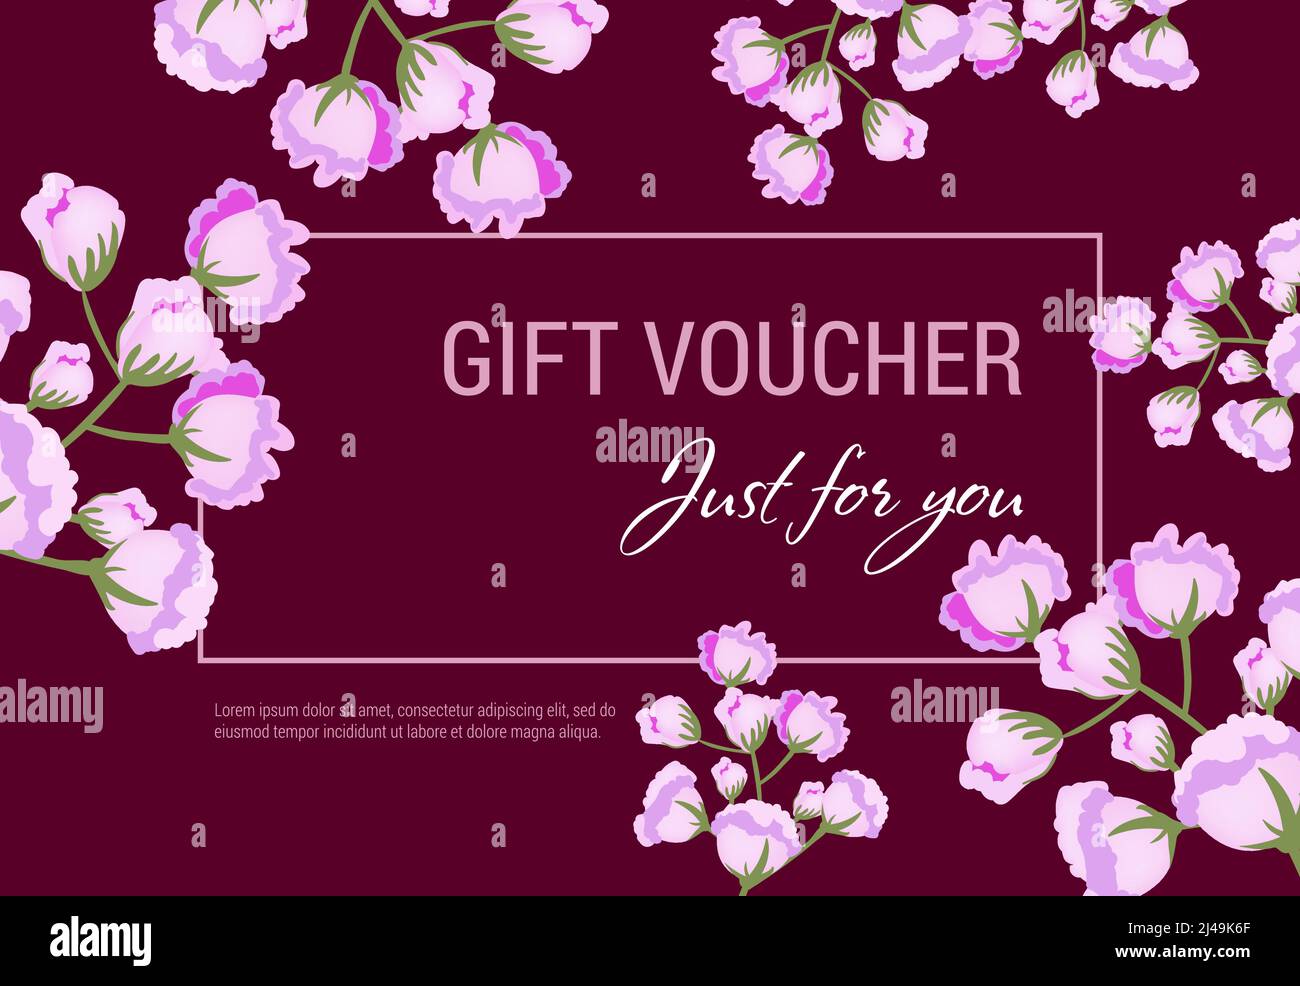 Solo per voi regalo voucher design con fiori lilla e cornice su sfondo vinoso. Il testo può essere utilizzato per coupon, certificati, volantini Illustrazione Vettoriale